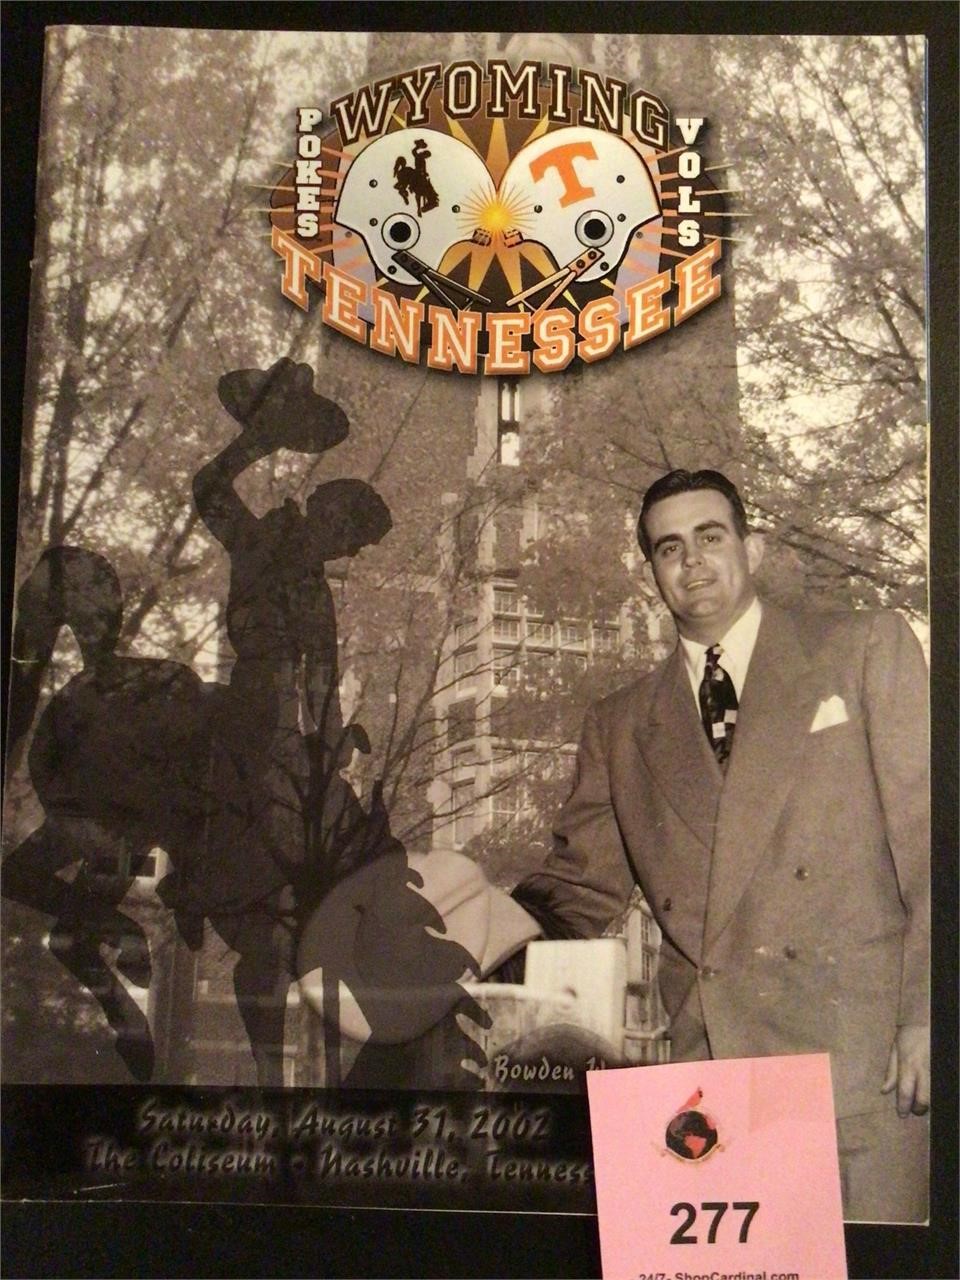 The Coliseum Nashville Tennessee Program